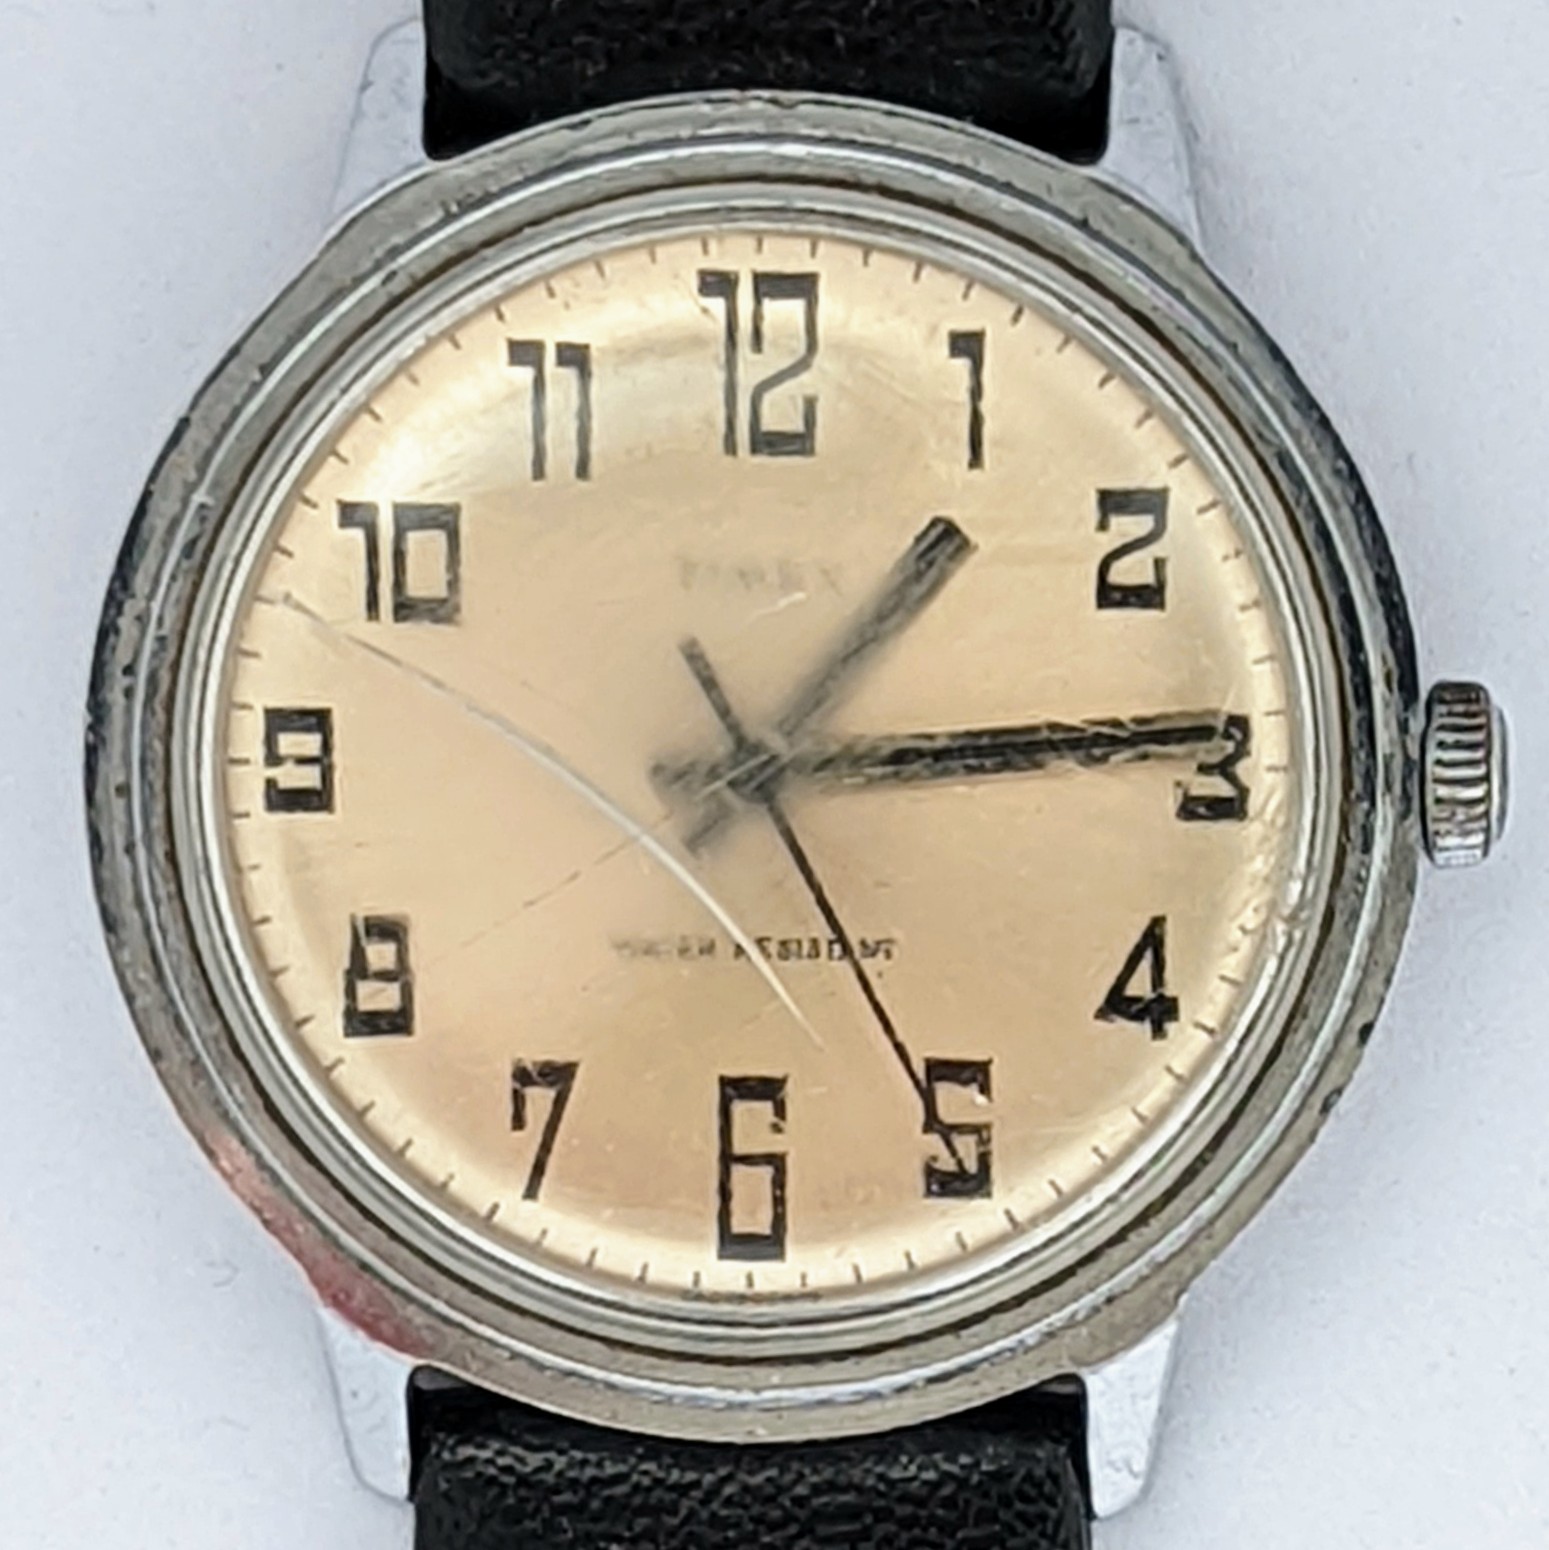 Timex Marlin 26058 02476 [1976]